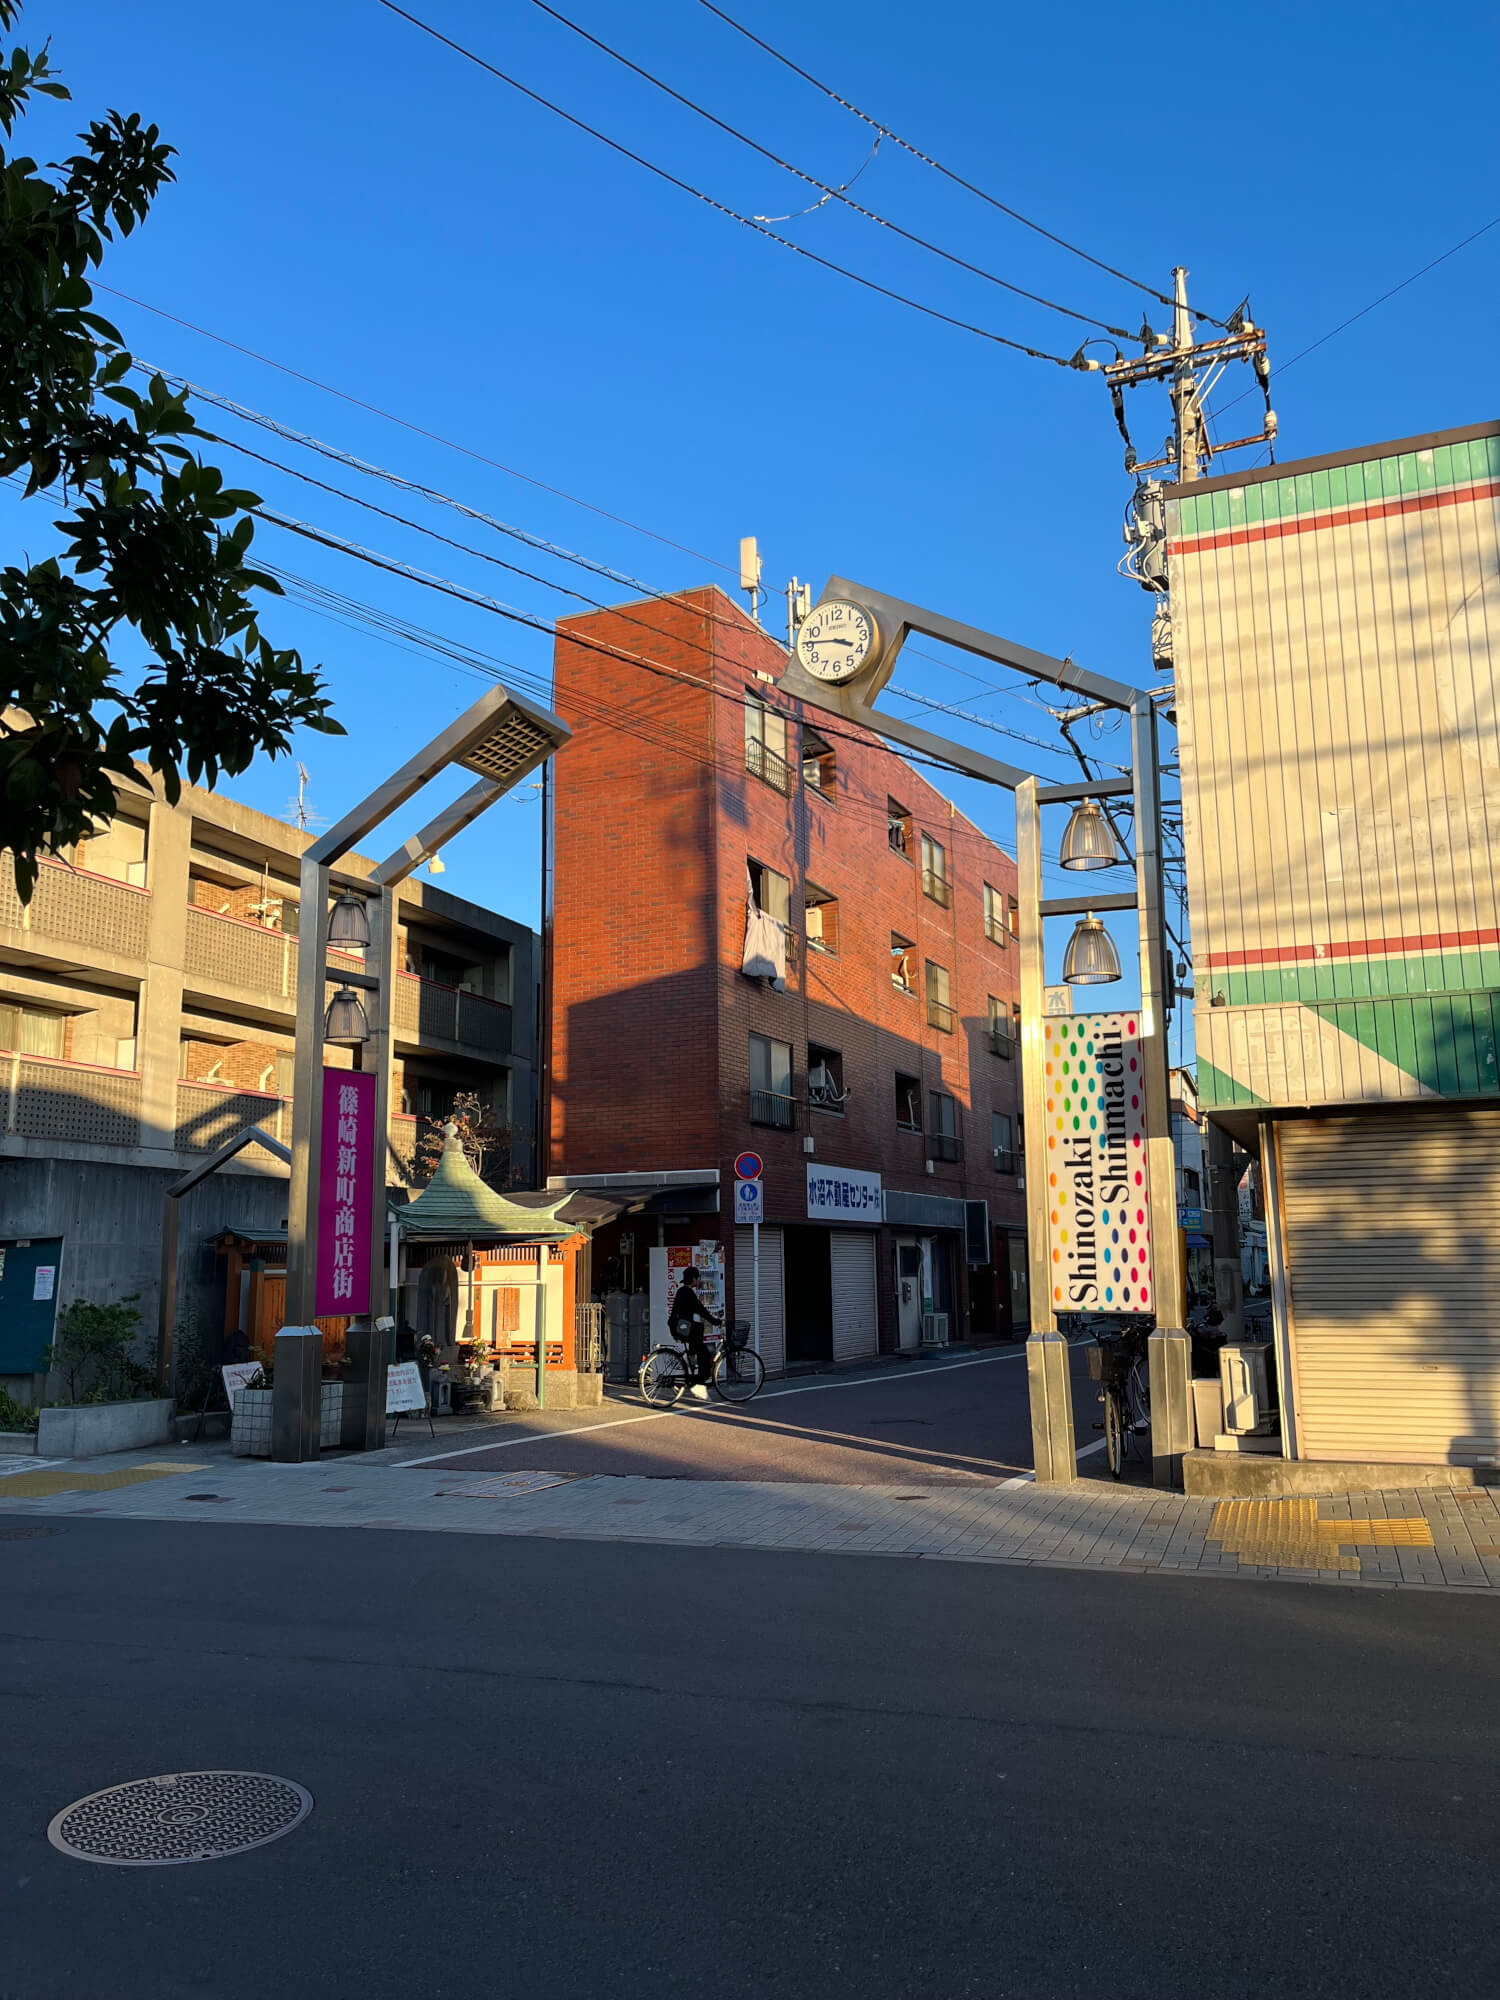 篠崎と瑞江の中間地点にある新町商店街。かつては歩くのも大変なほどの人通りだった。